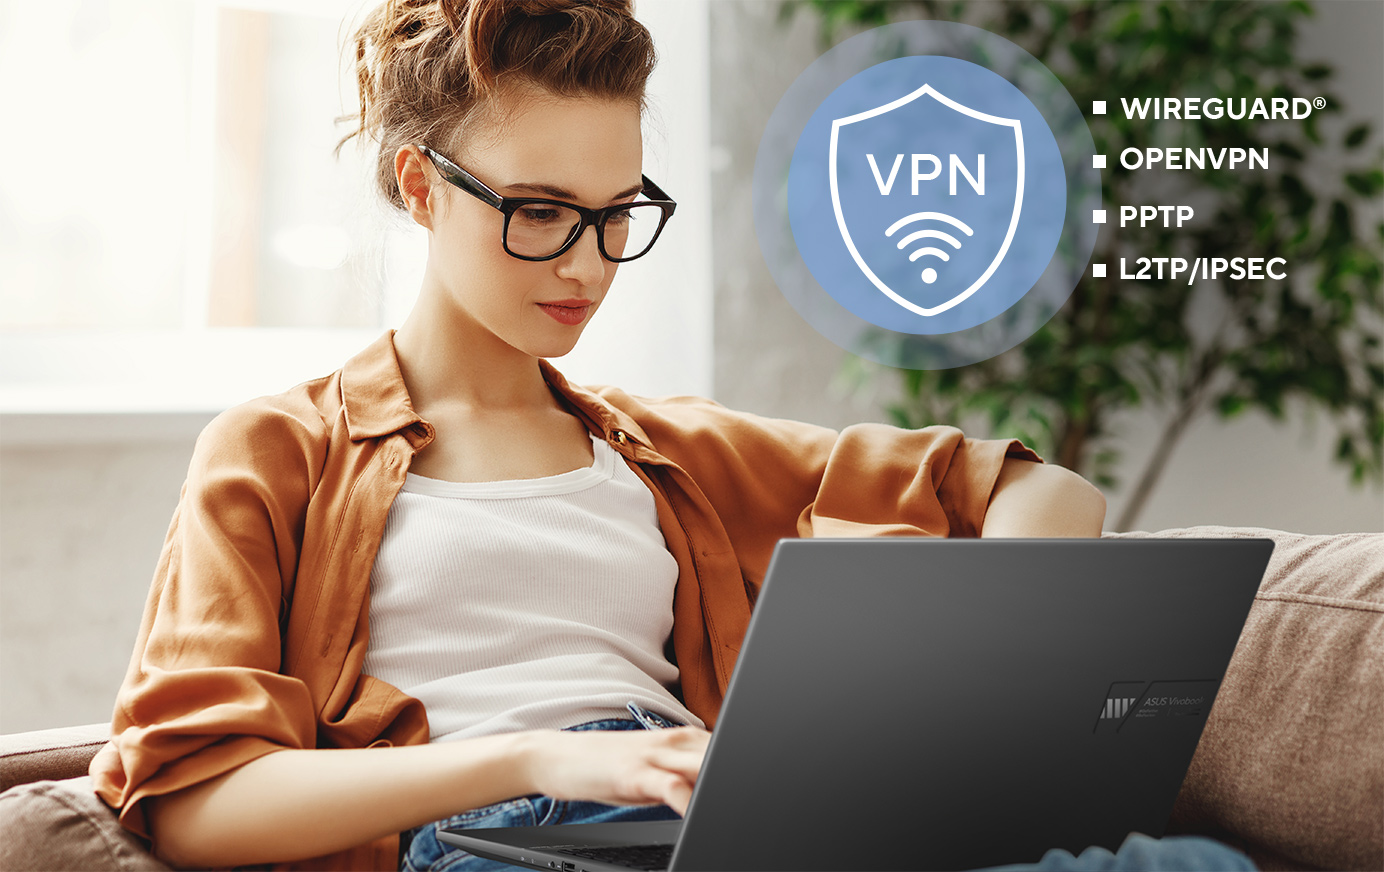 Os routers ASUS suportam uma gama de protocolos de segurança VPN, incluindo WireGuard®, OpenVPN, PPTP, e L2TP/IPSec.